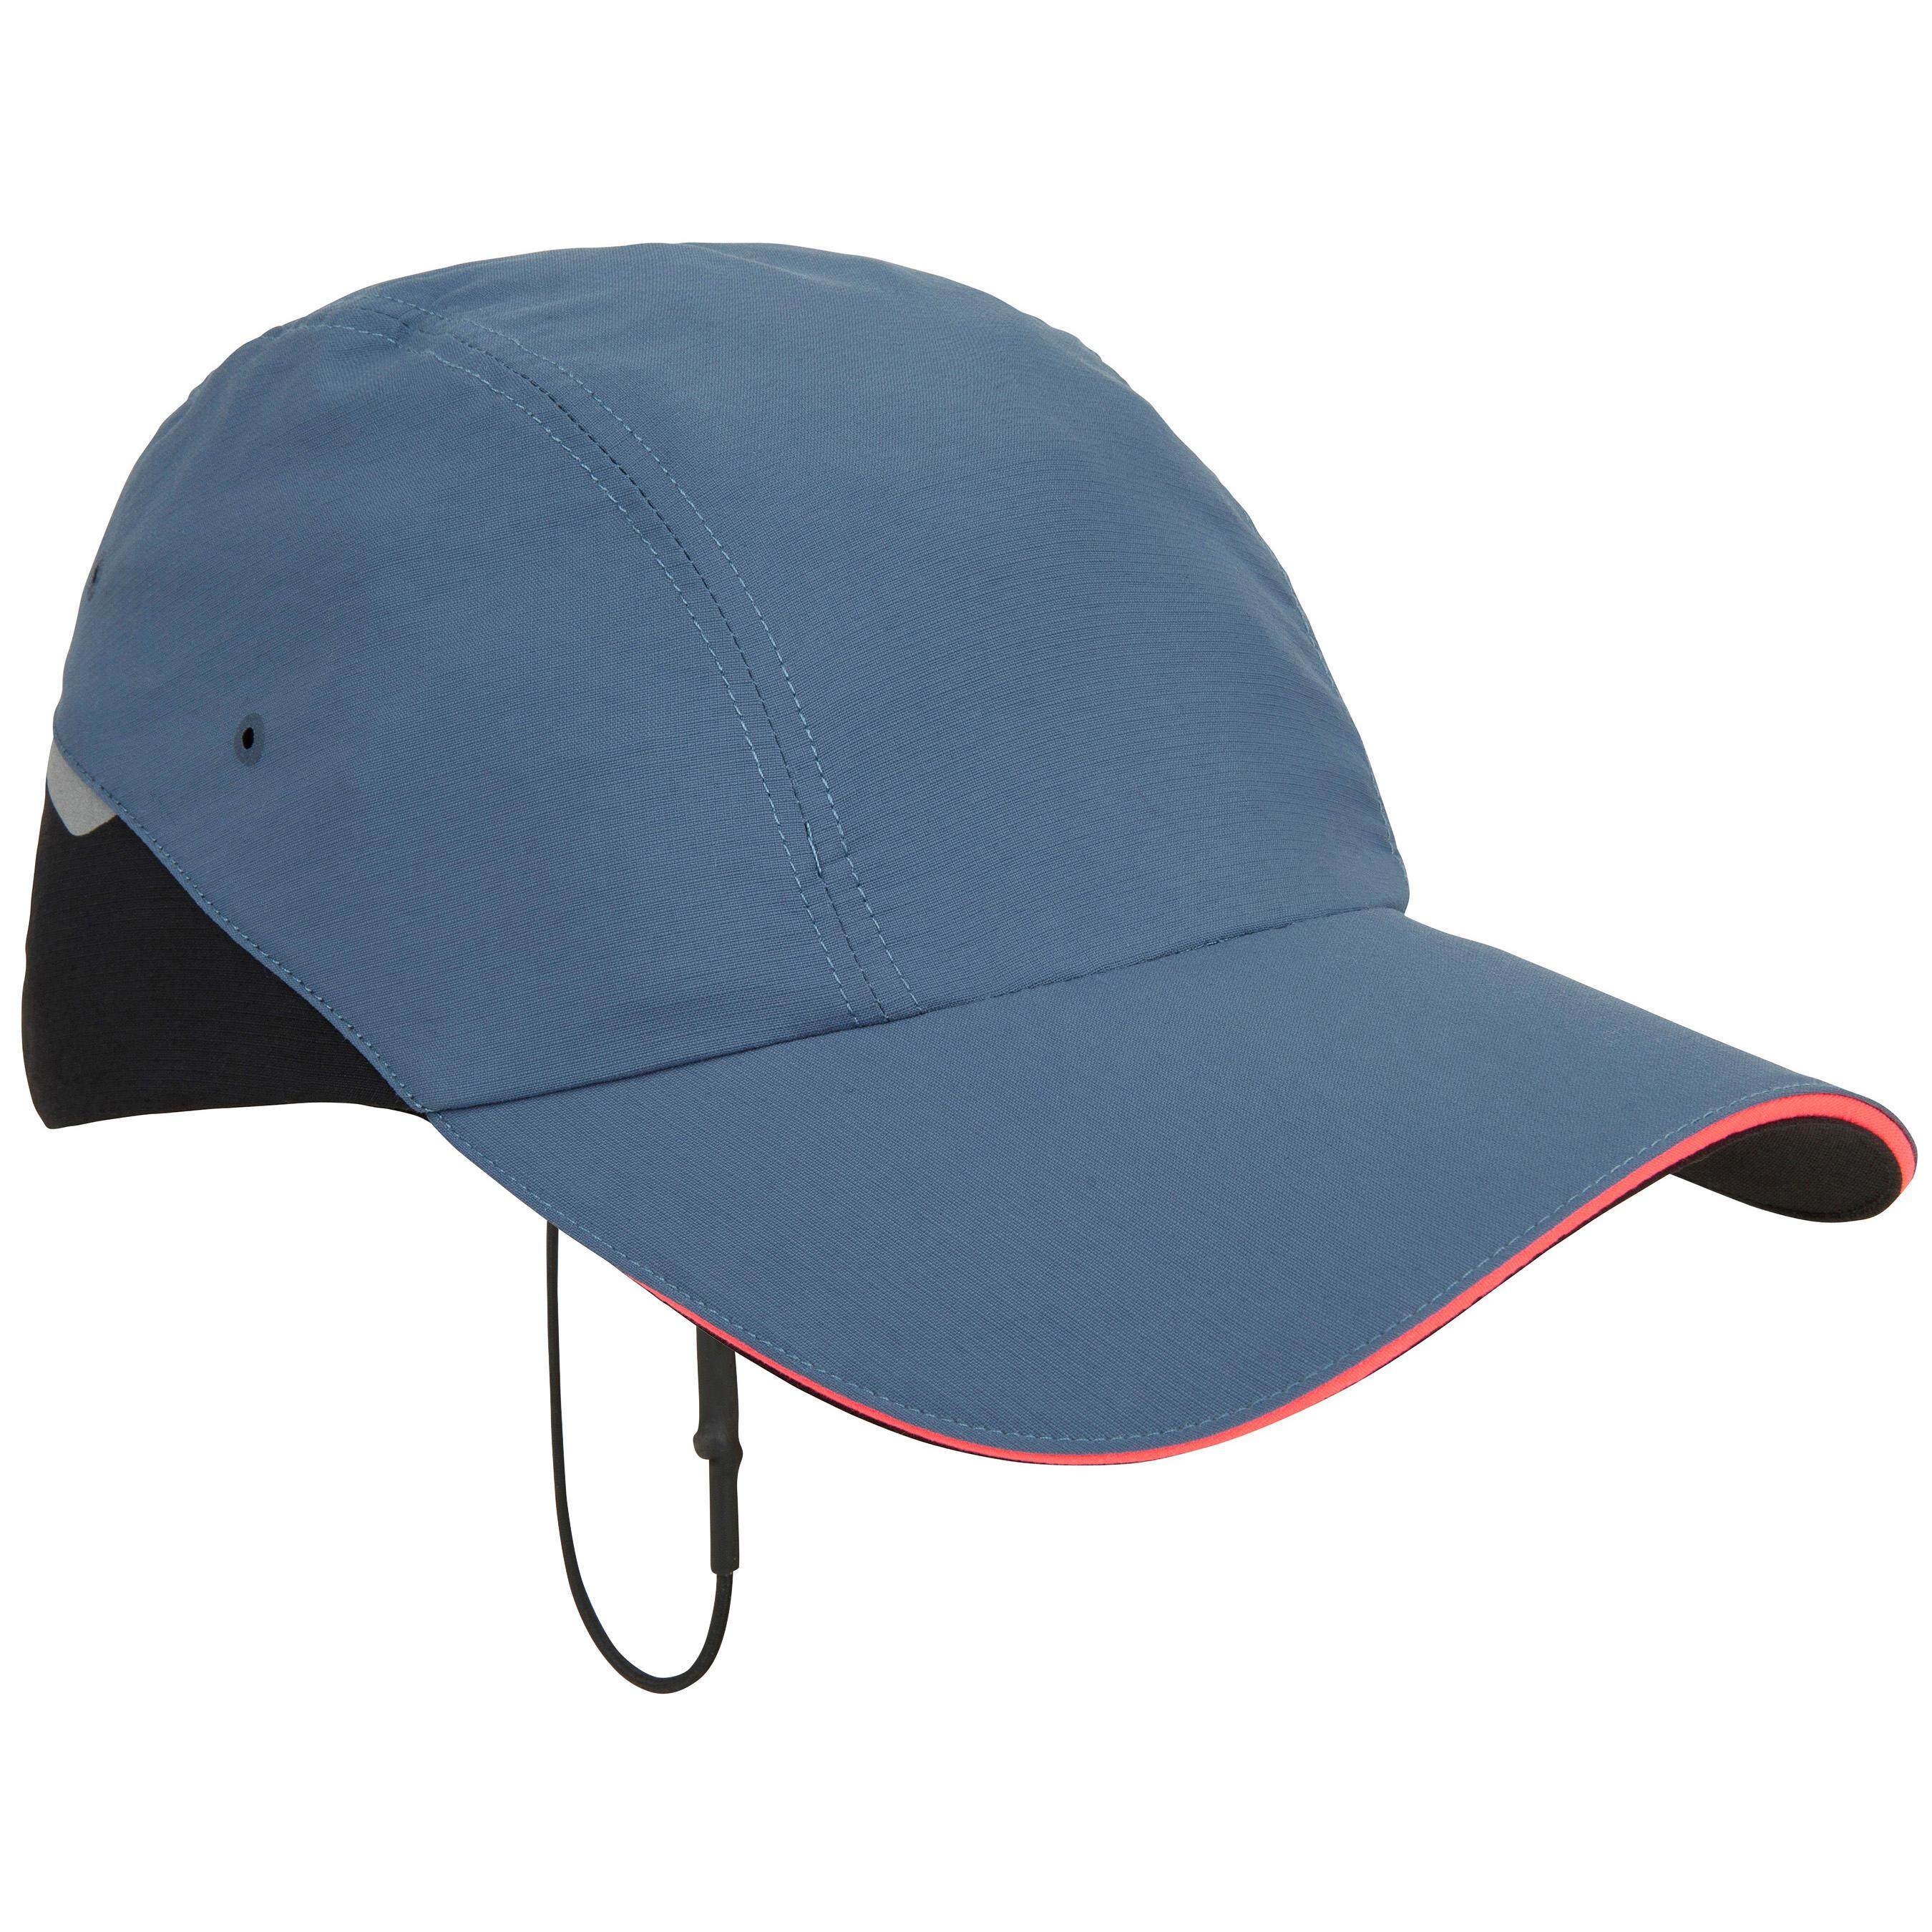 [โปรดี!!! ราคาโดนใจ] หมวกสำหรับใส่ล่องเรือรุ่น RACE 500 (สีน้ำเงินเทา)